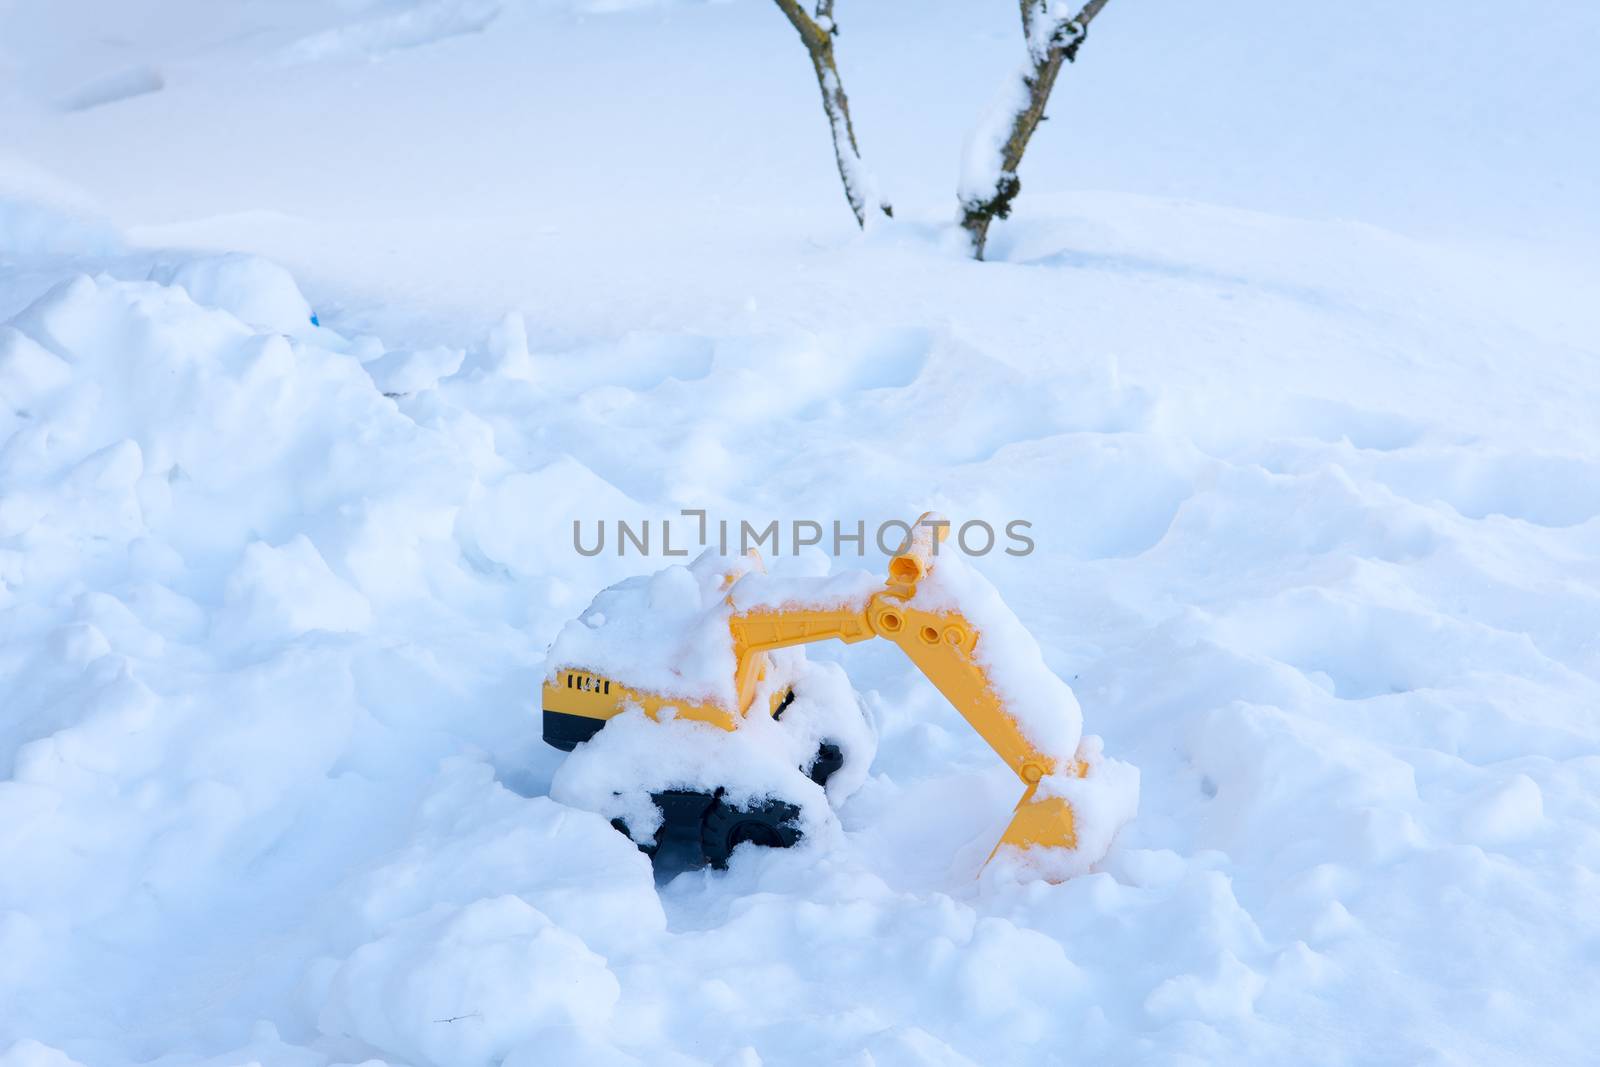 Children's toy forgotten in the snow by ben44